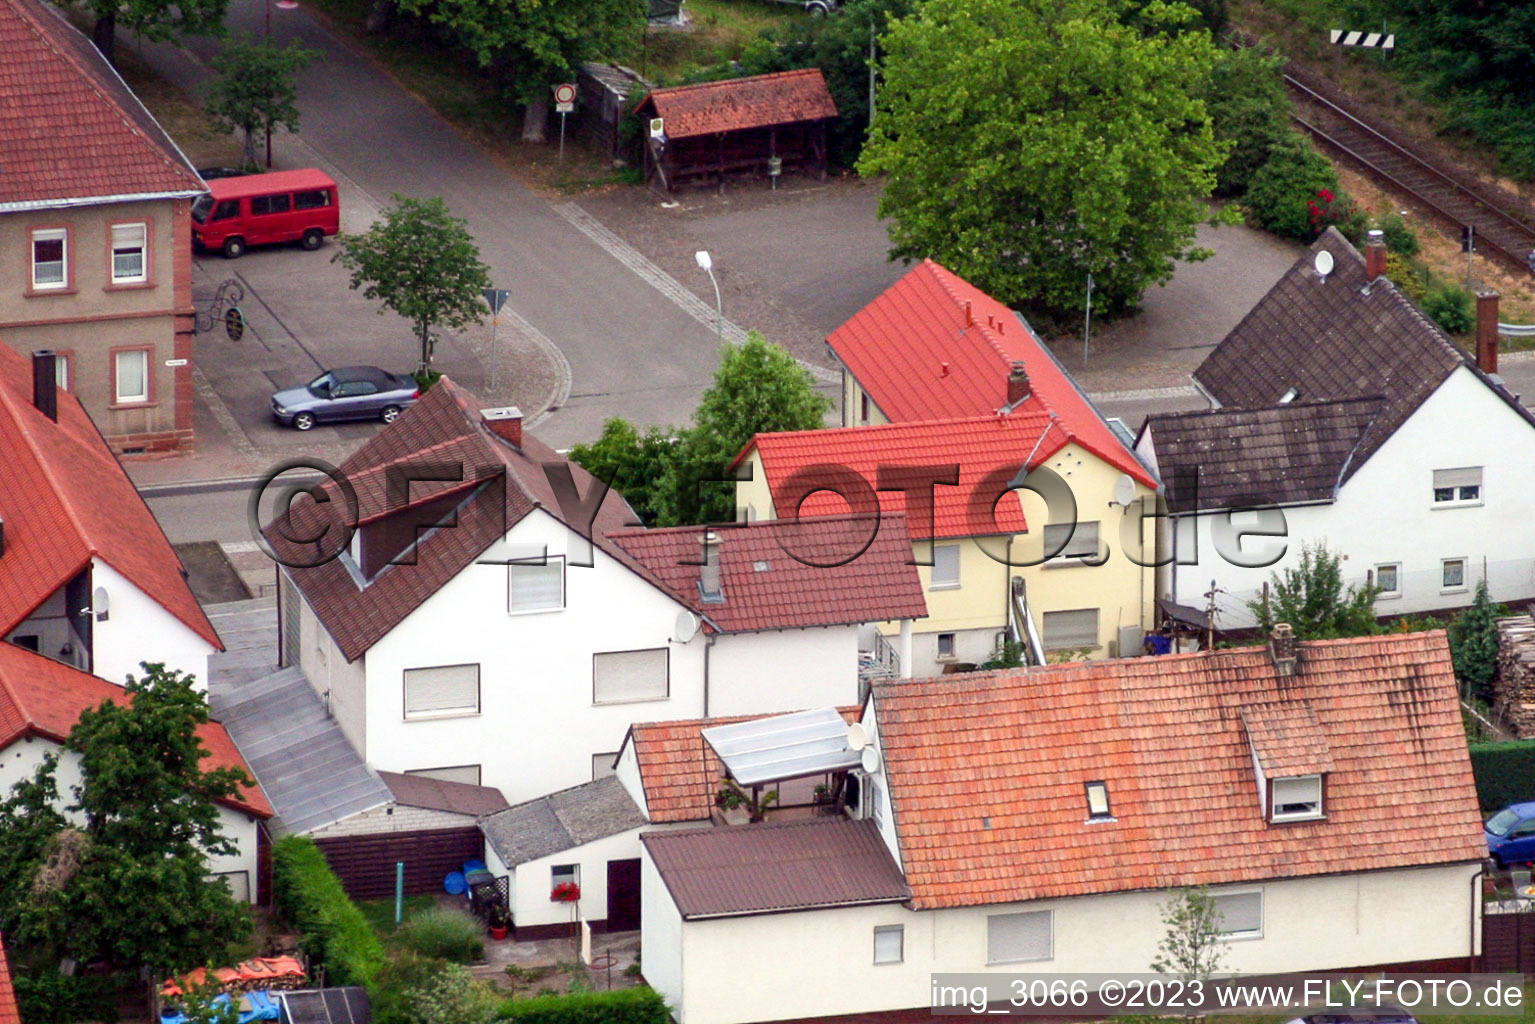 Barbelroth im Bundesland Rheinland-Pfalz, Deutschland von einer Drohne aus